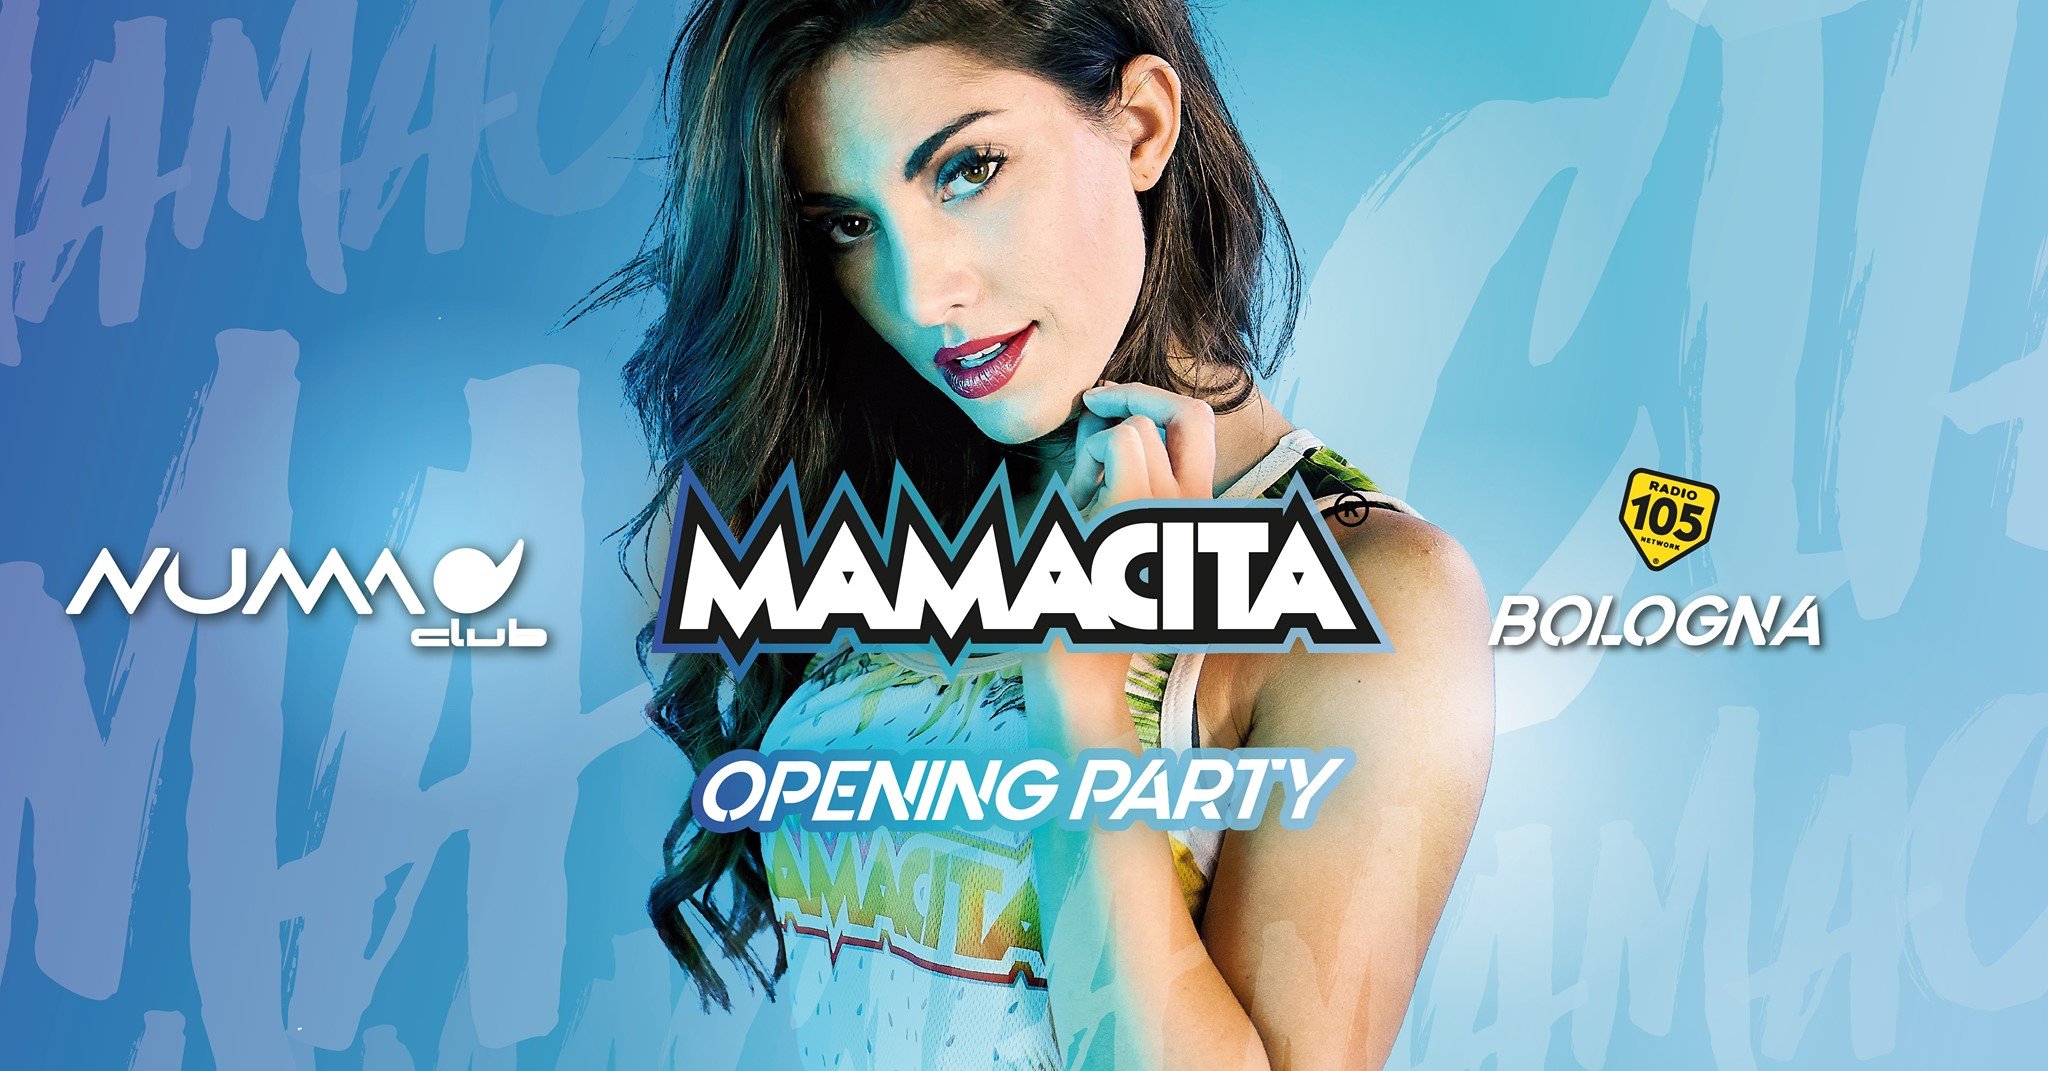 Mamacita Opening Party Numa Club Bologna